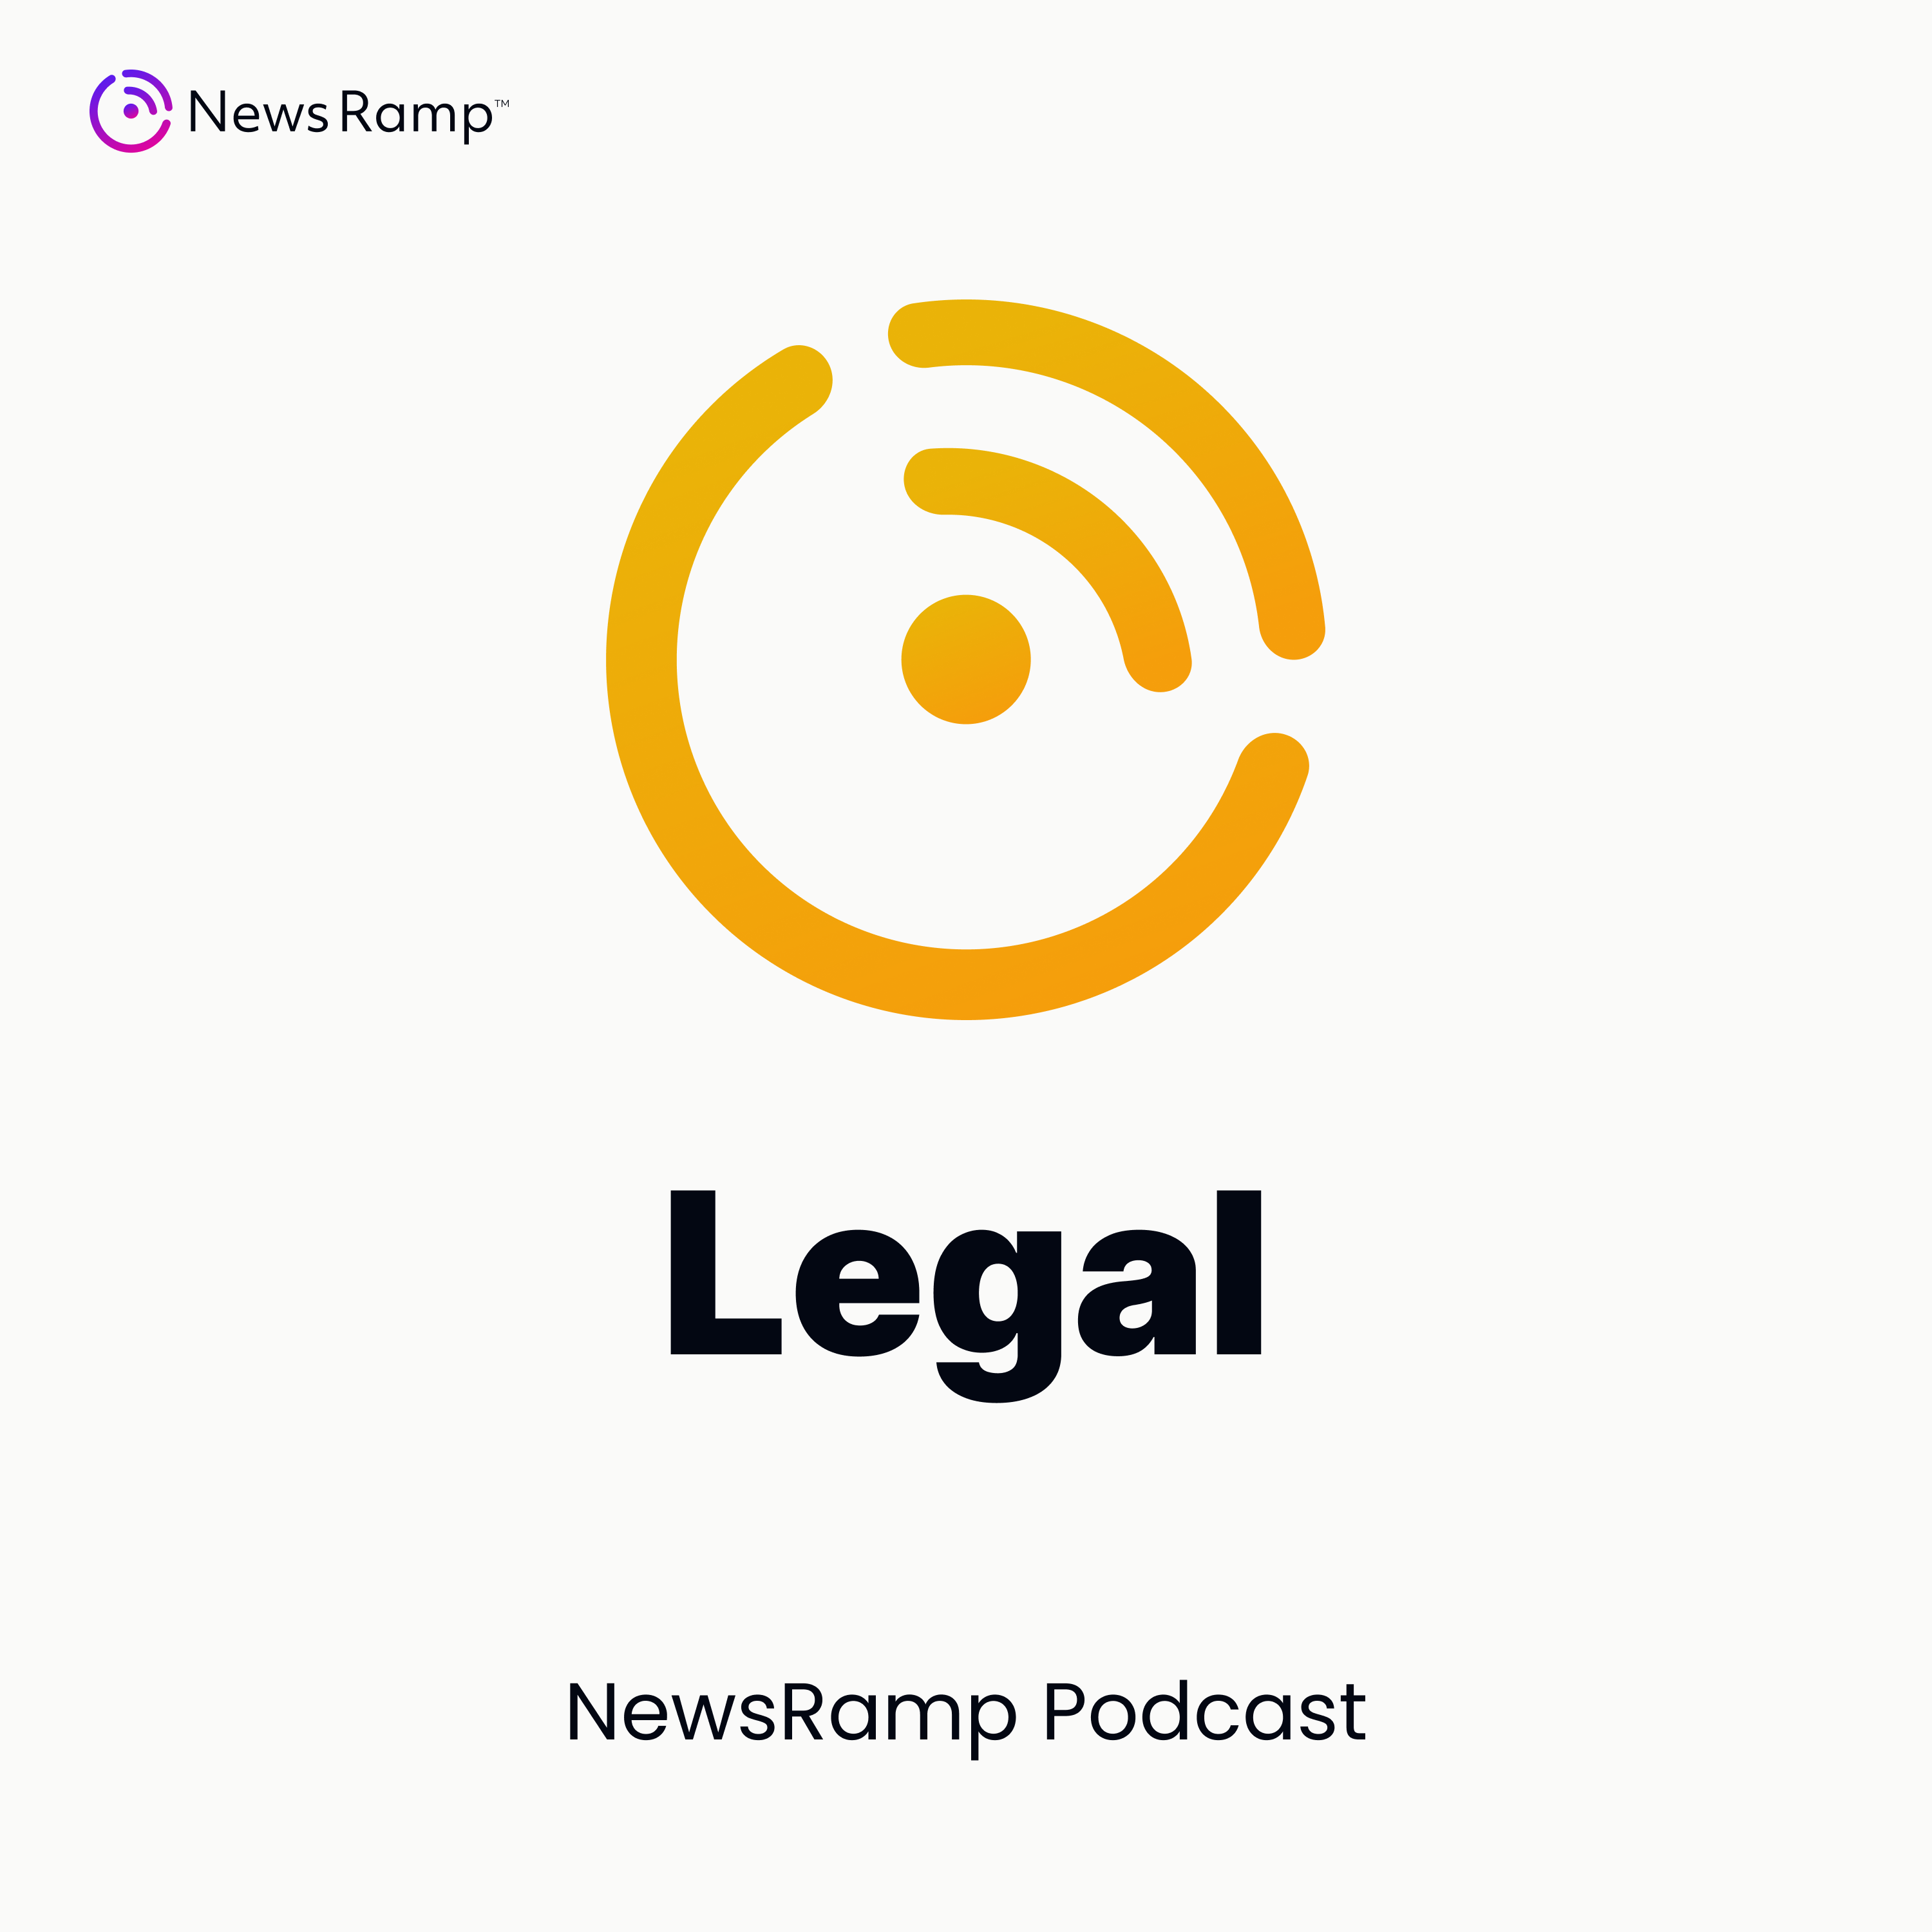 NewsRamp Legal Podcast artwork